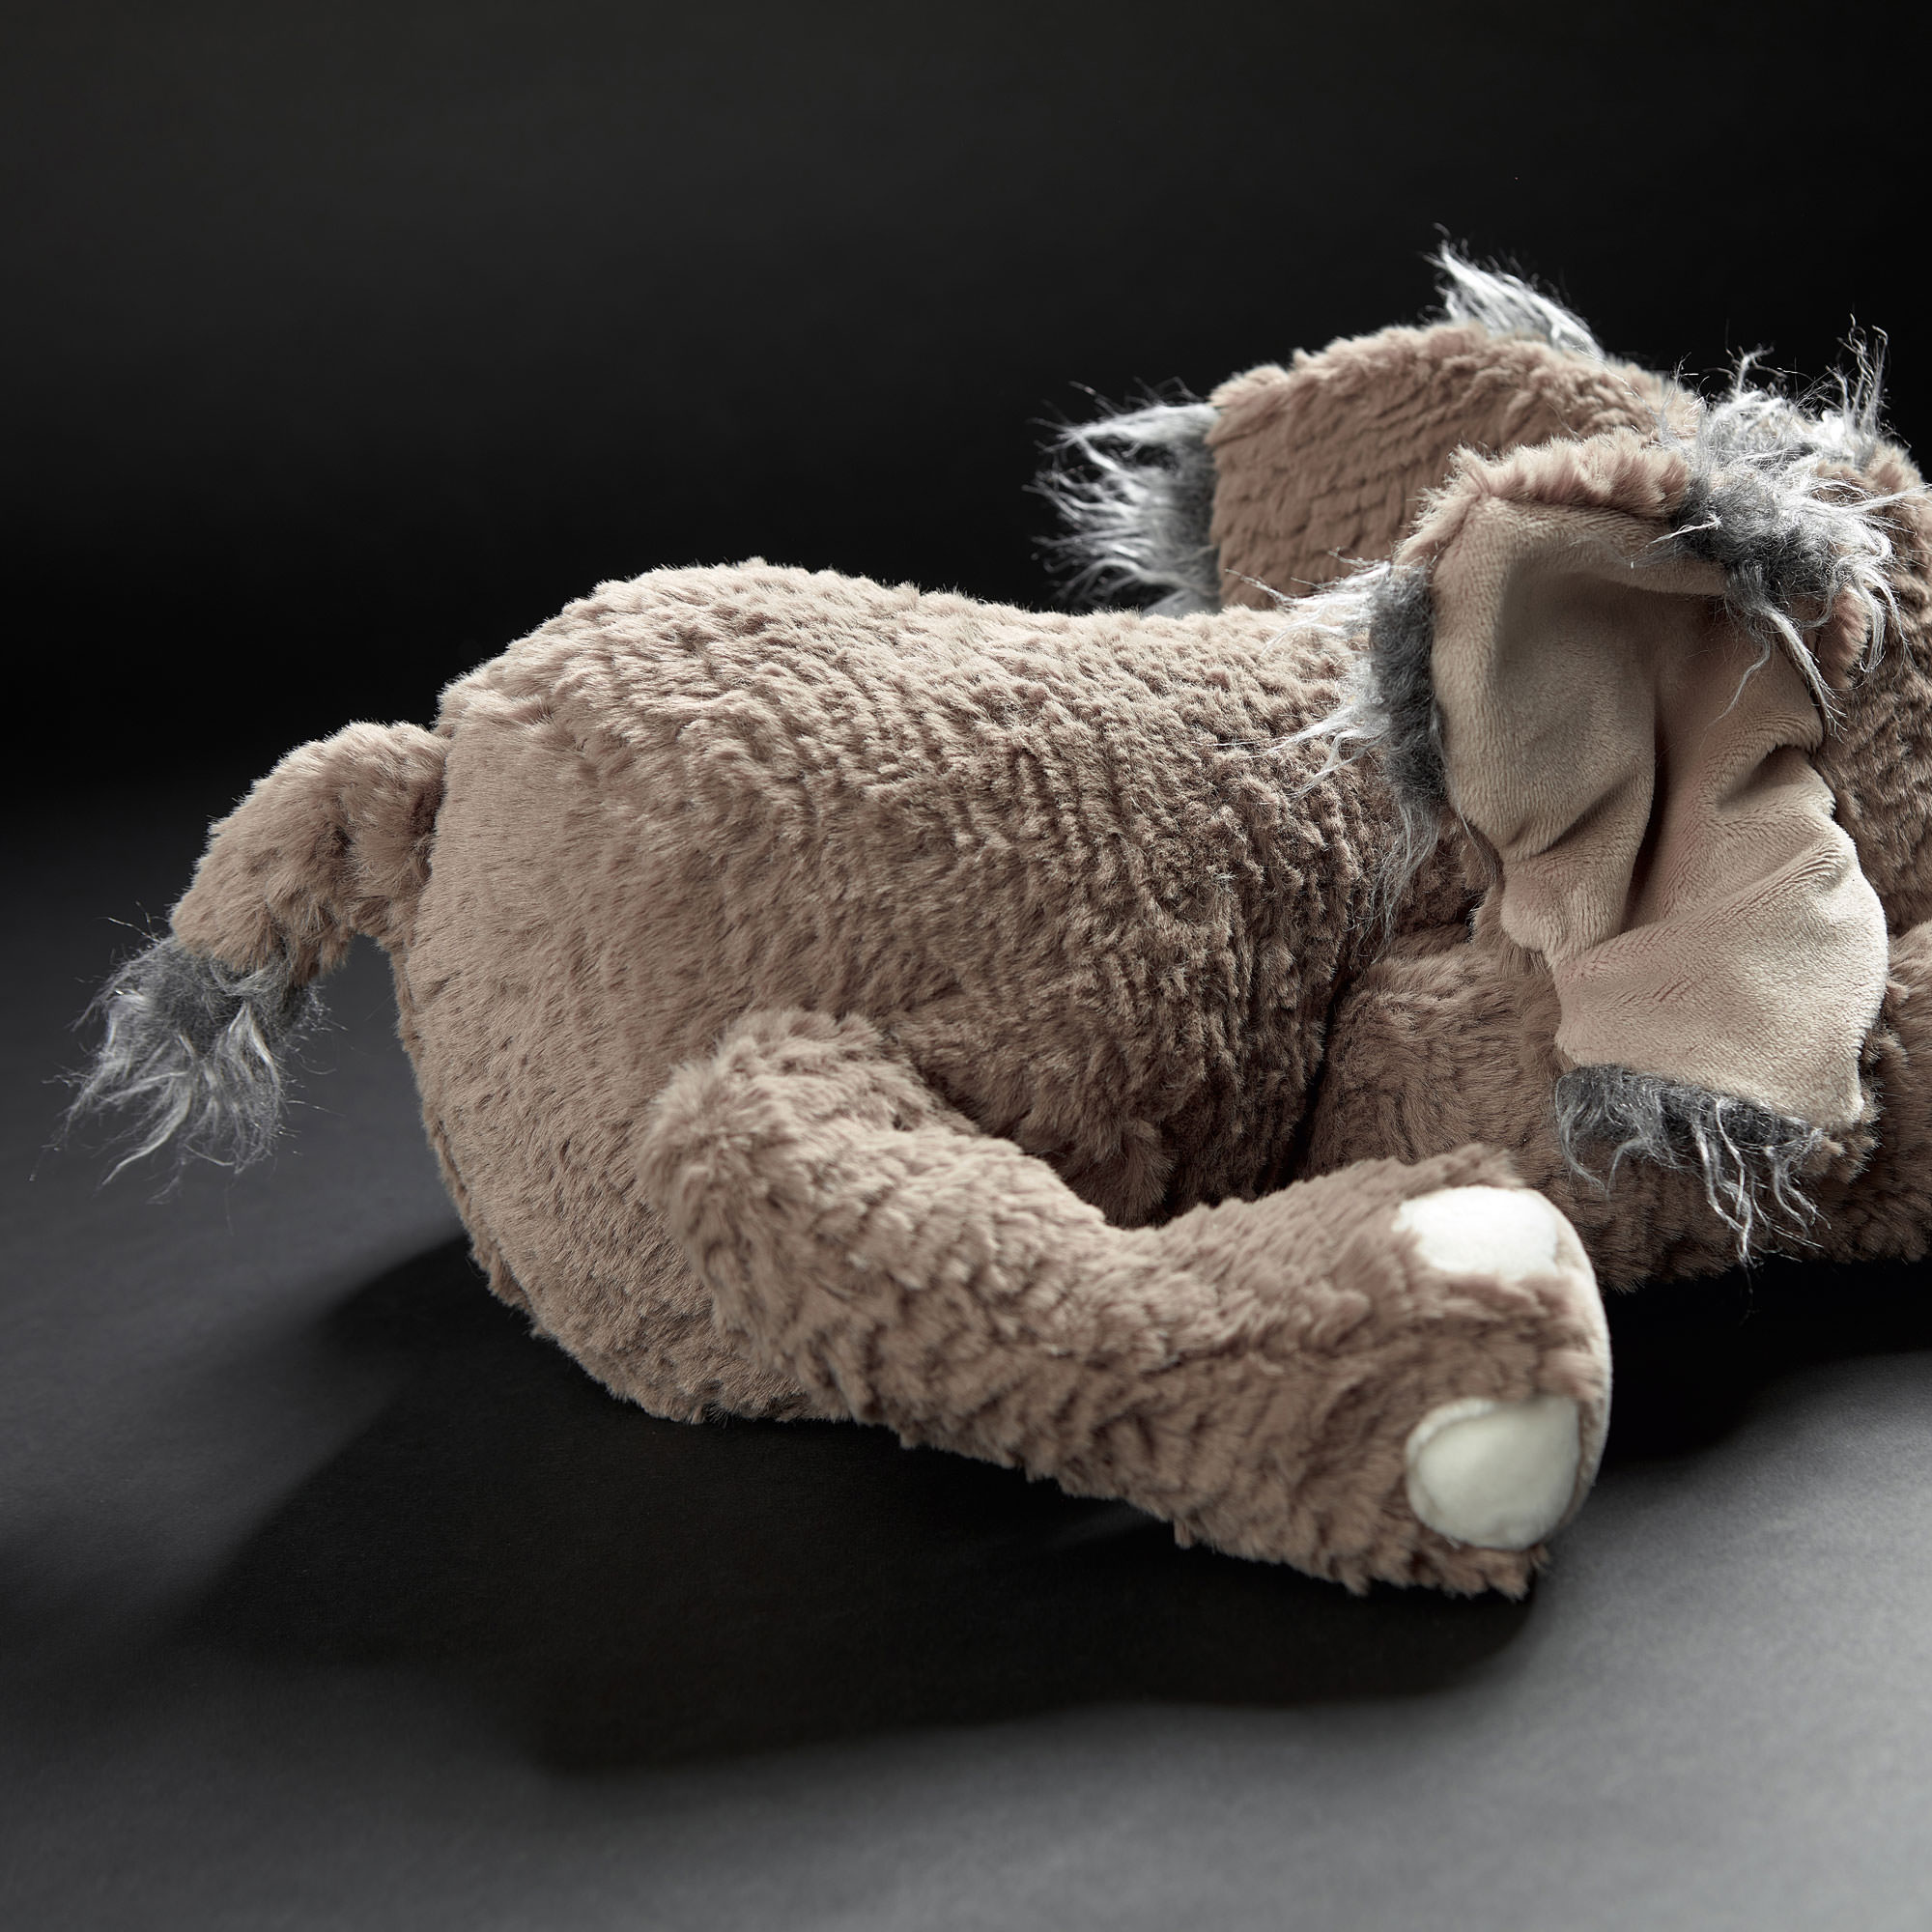 Stuffed plush elephant Francoise Lelefant, Beasts collection